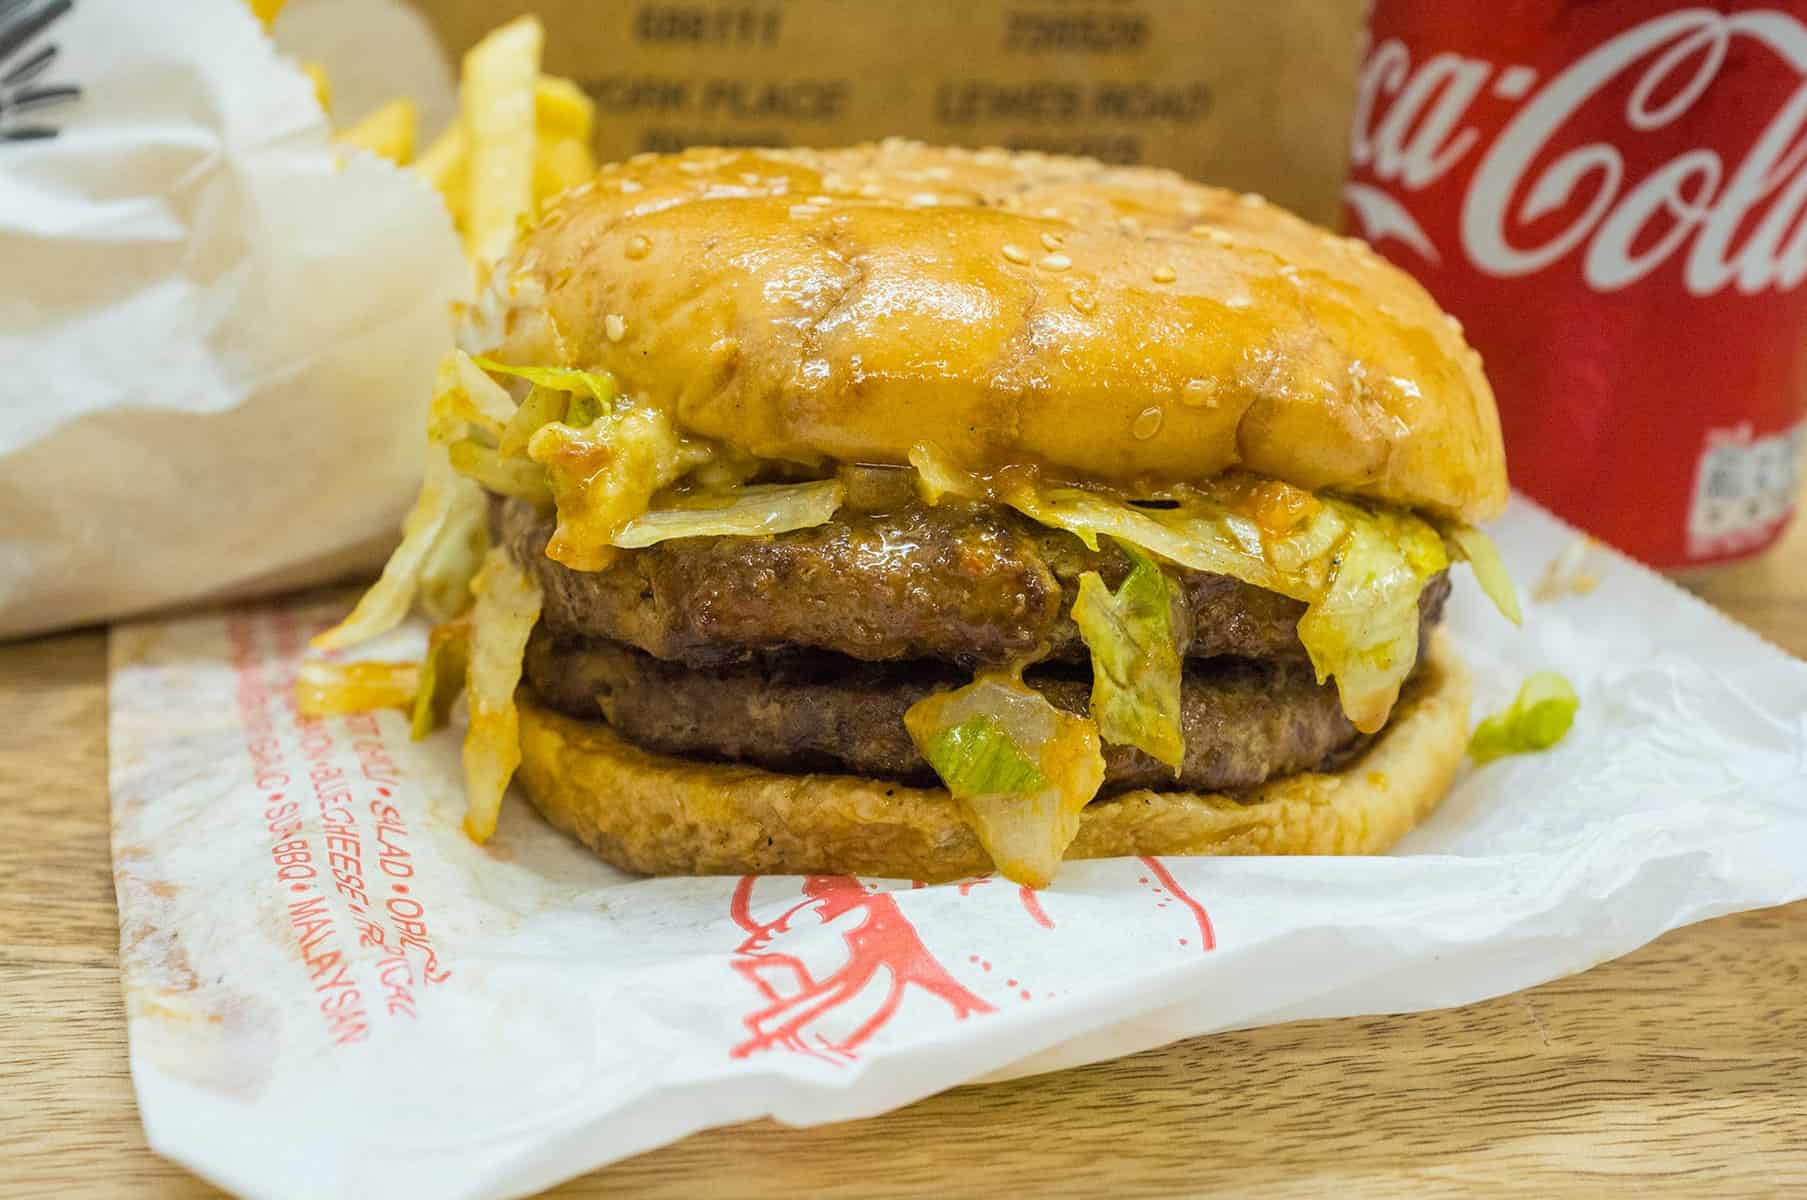 Grubbs Burgers – Malaysian